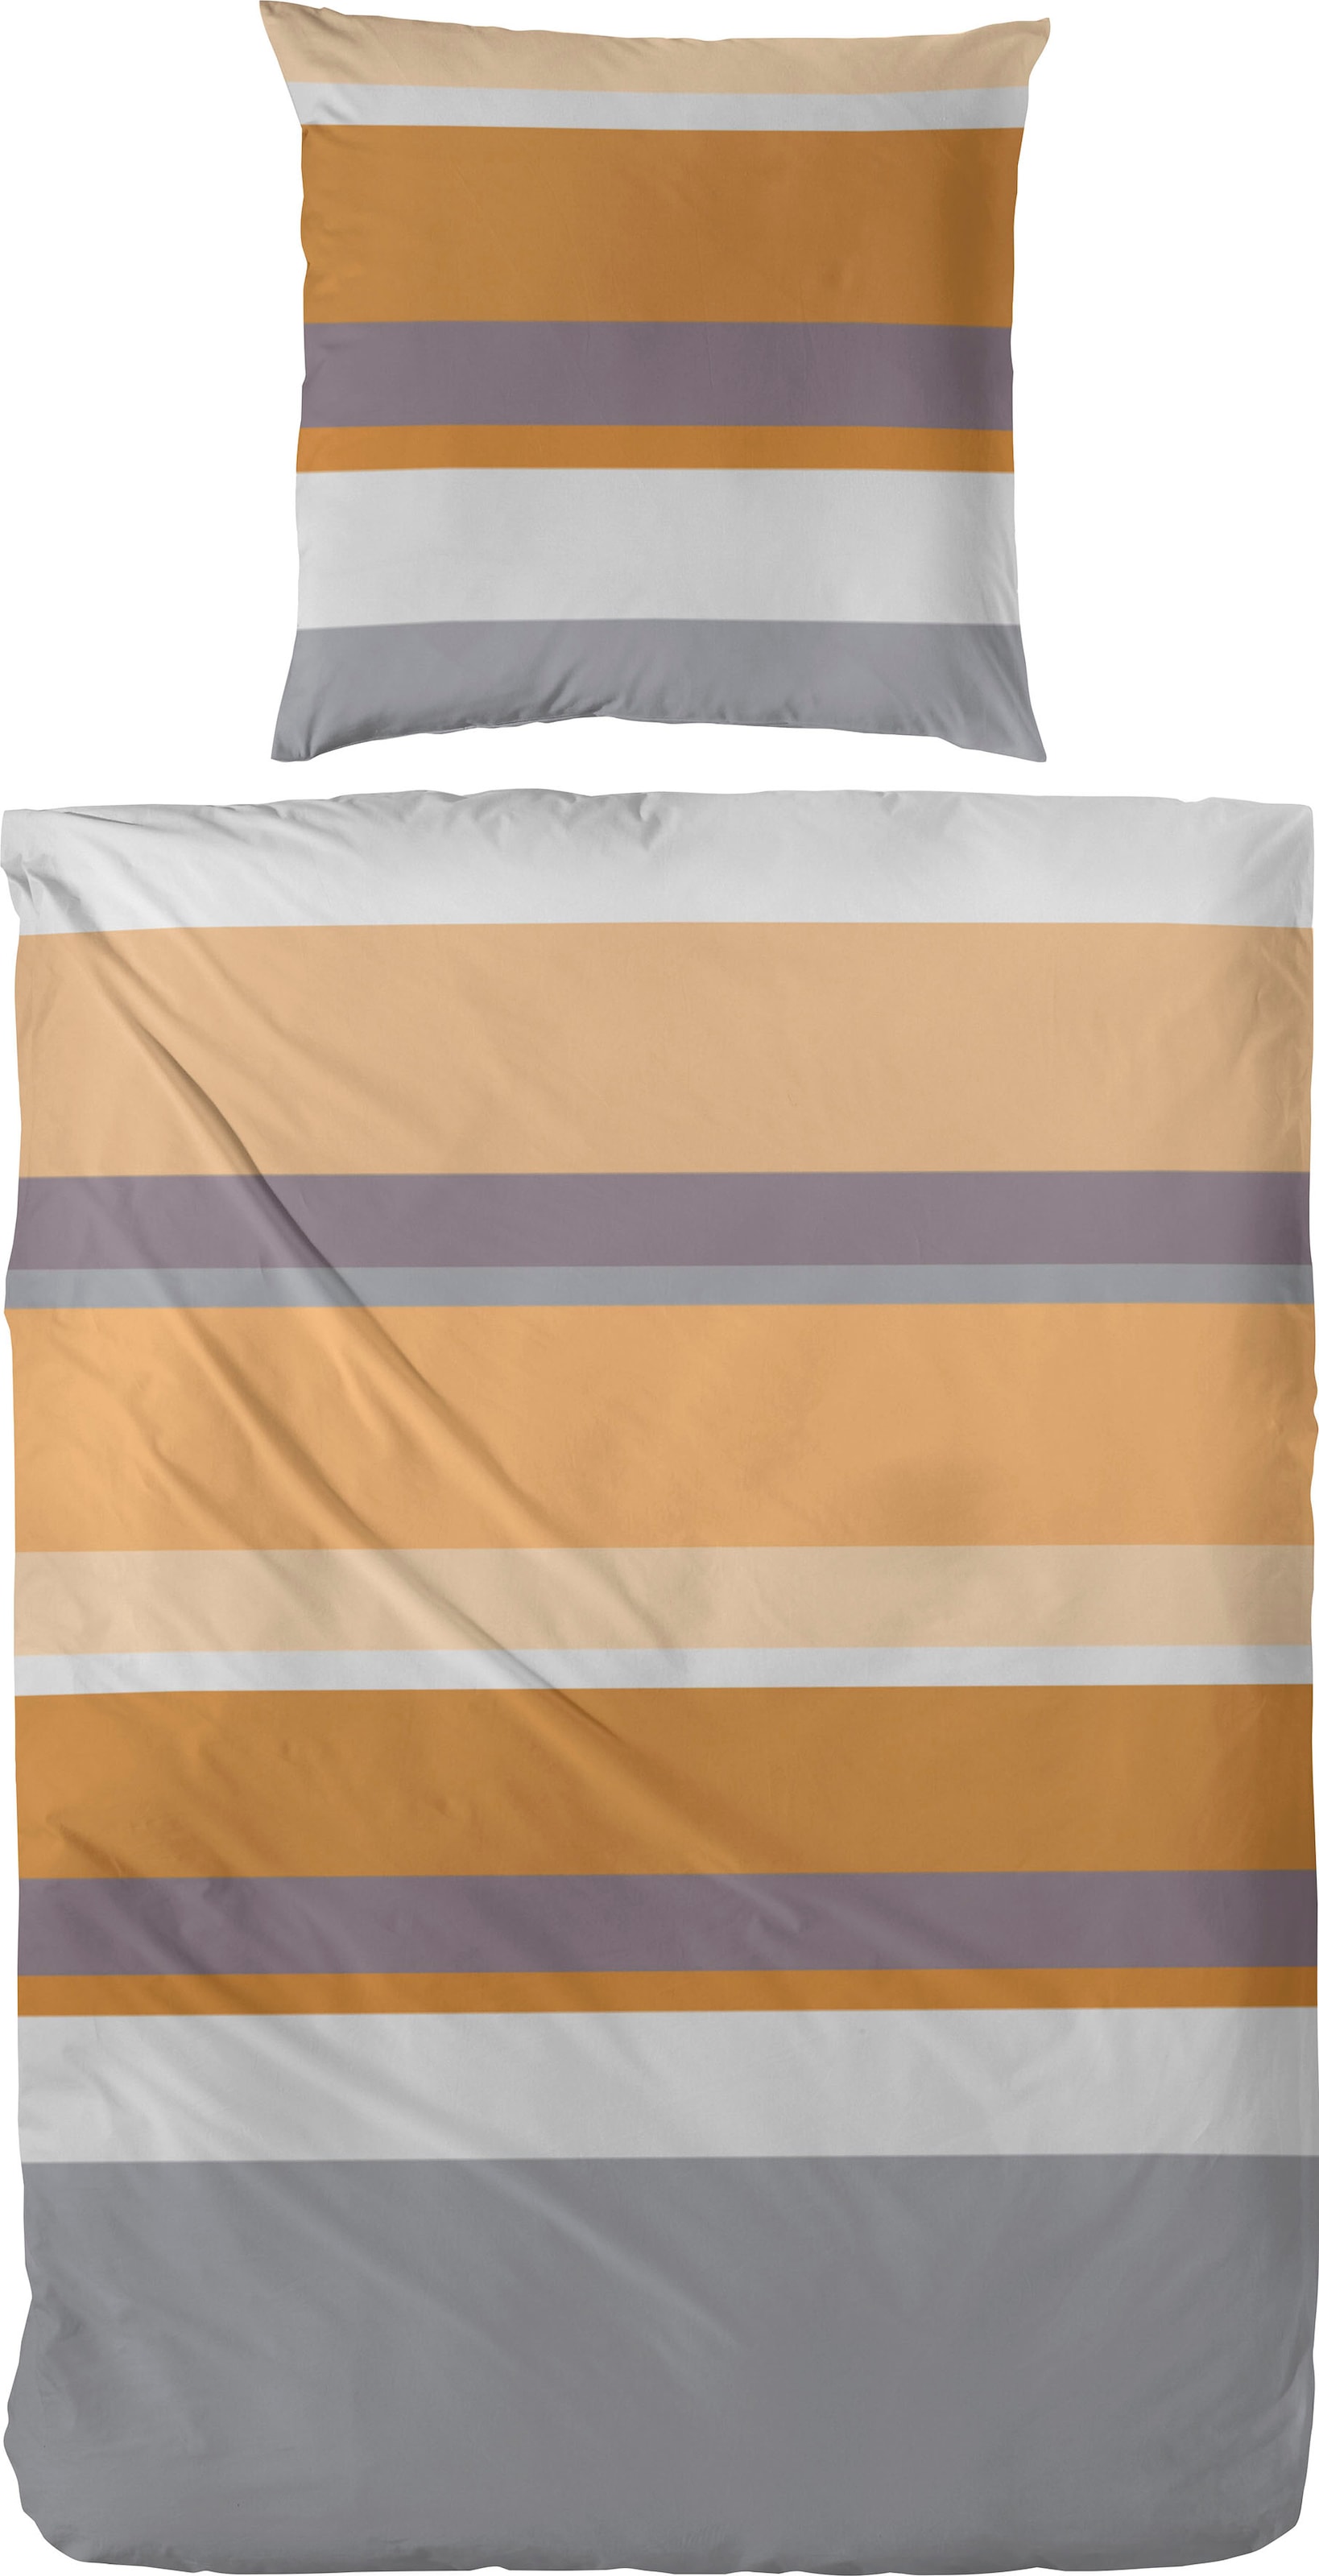 Primera Bettwäsche »Heavy Stripe«, (2 tlg.), mit modernen Streifen in frischen Farben